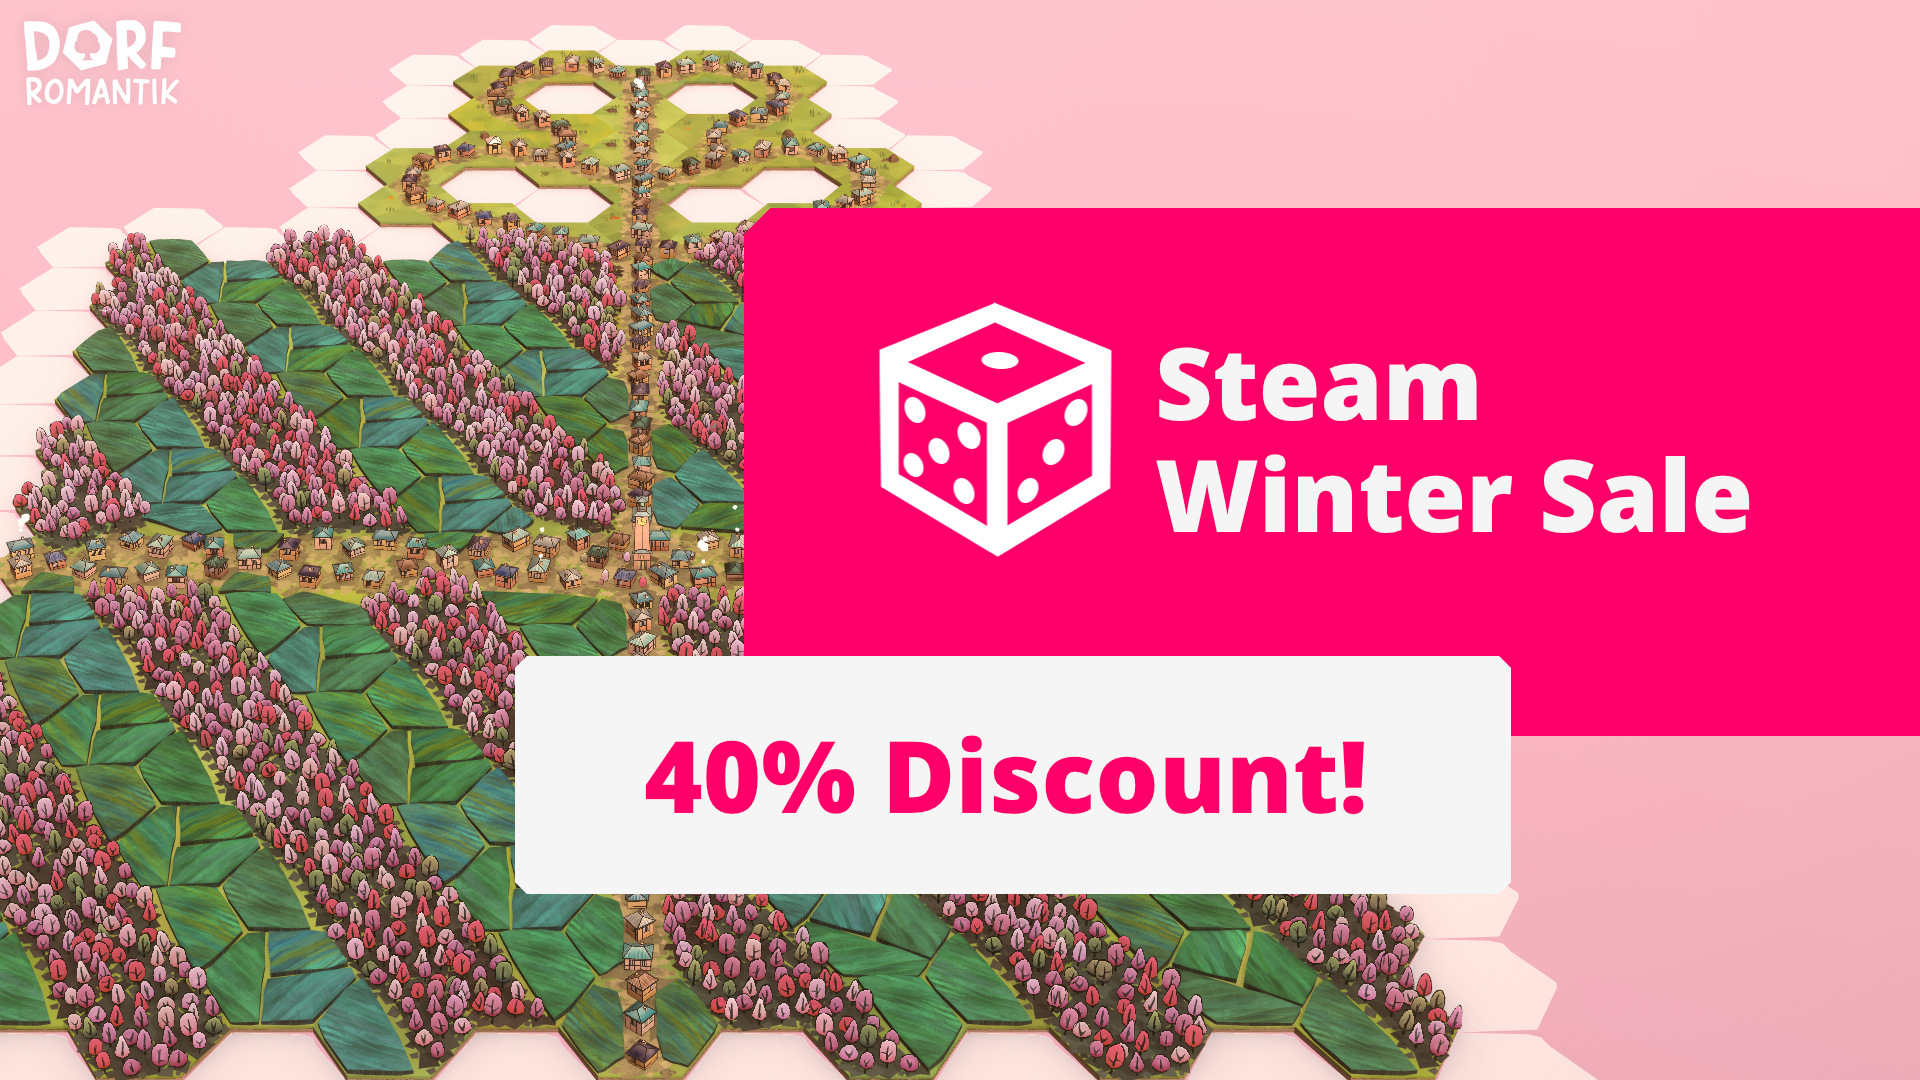 Économisez 30 % sur Dorfromantik sur Steam